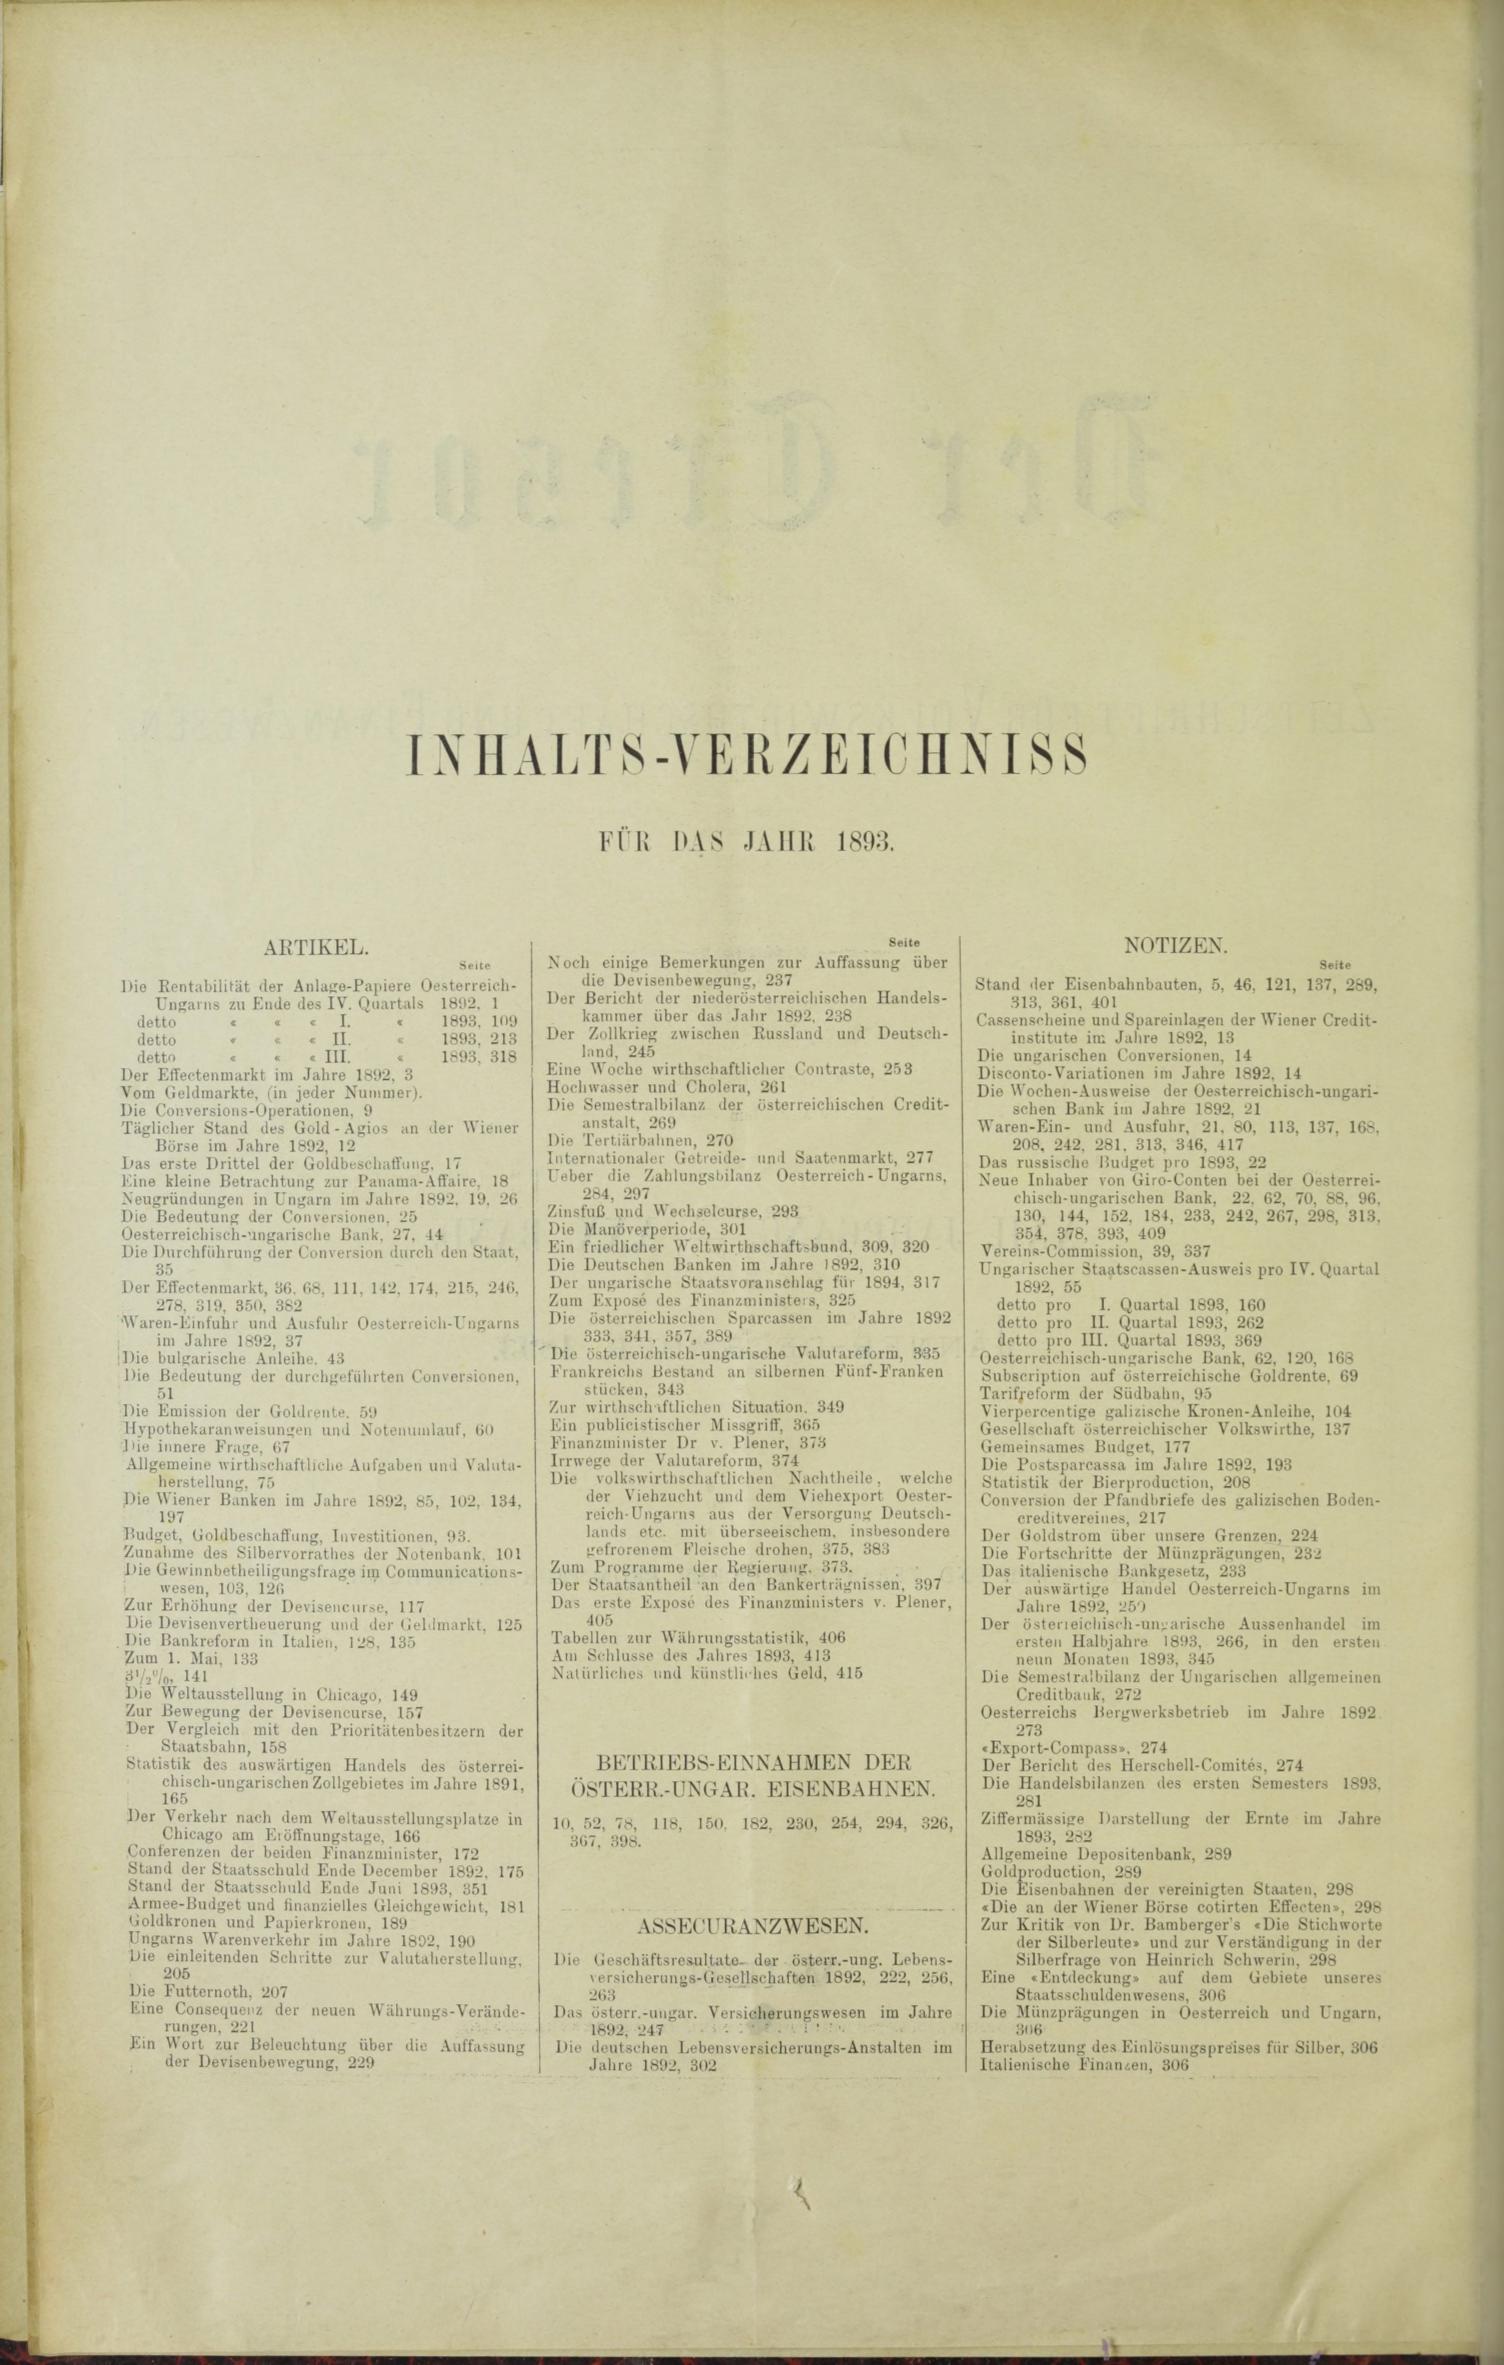 Der Tresor 02.03.1893 - Seite 12